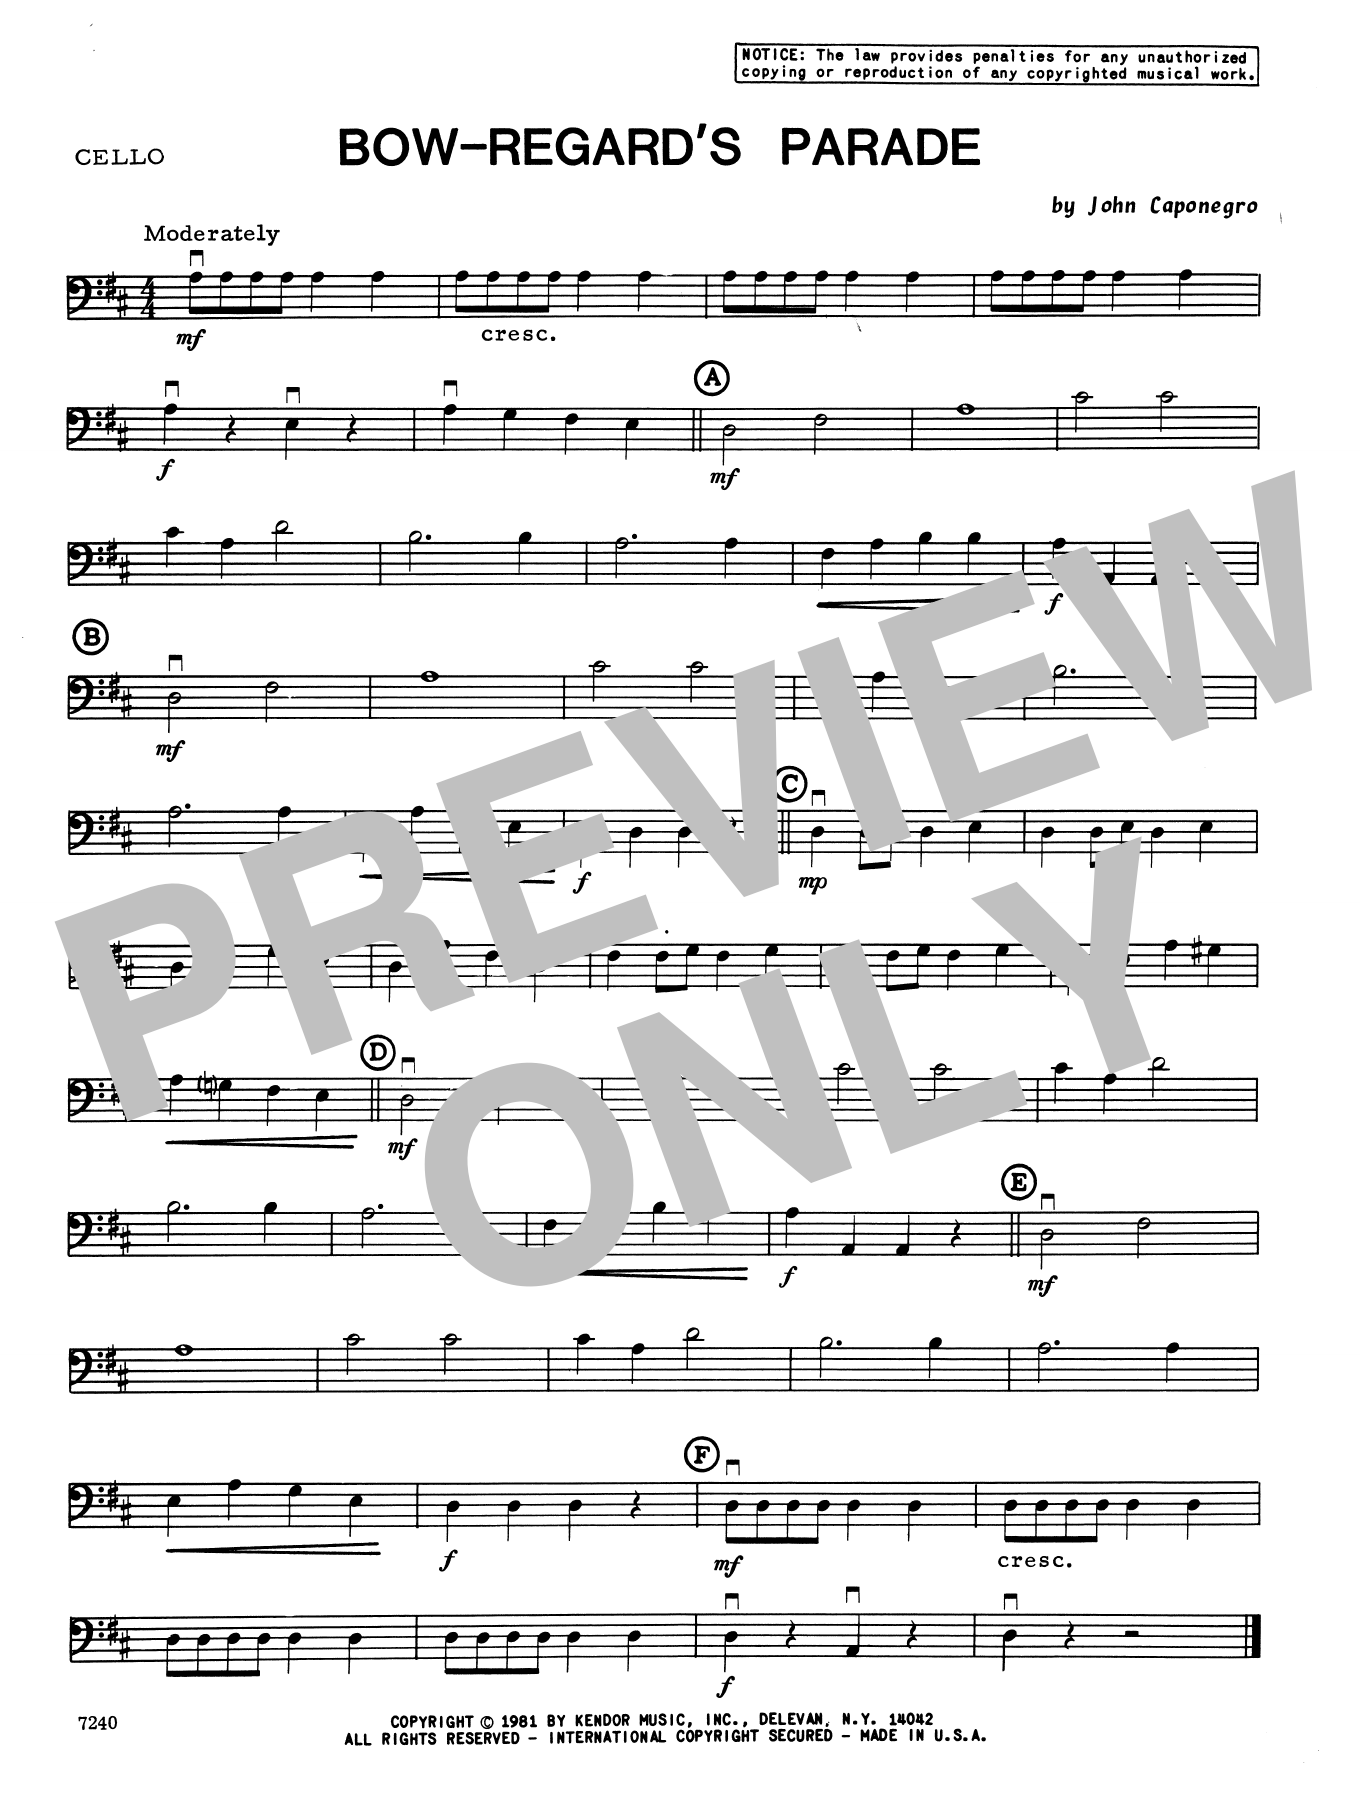 Download John Caponegro Bow-Regard's Parade - Cello Sheet Music